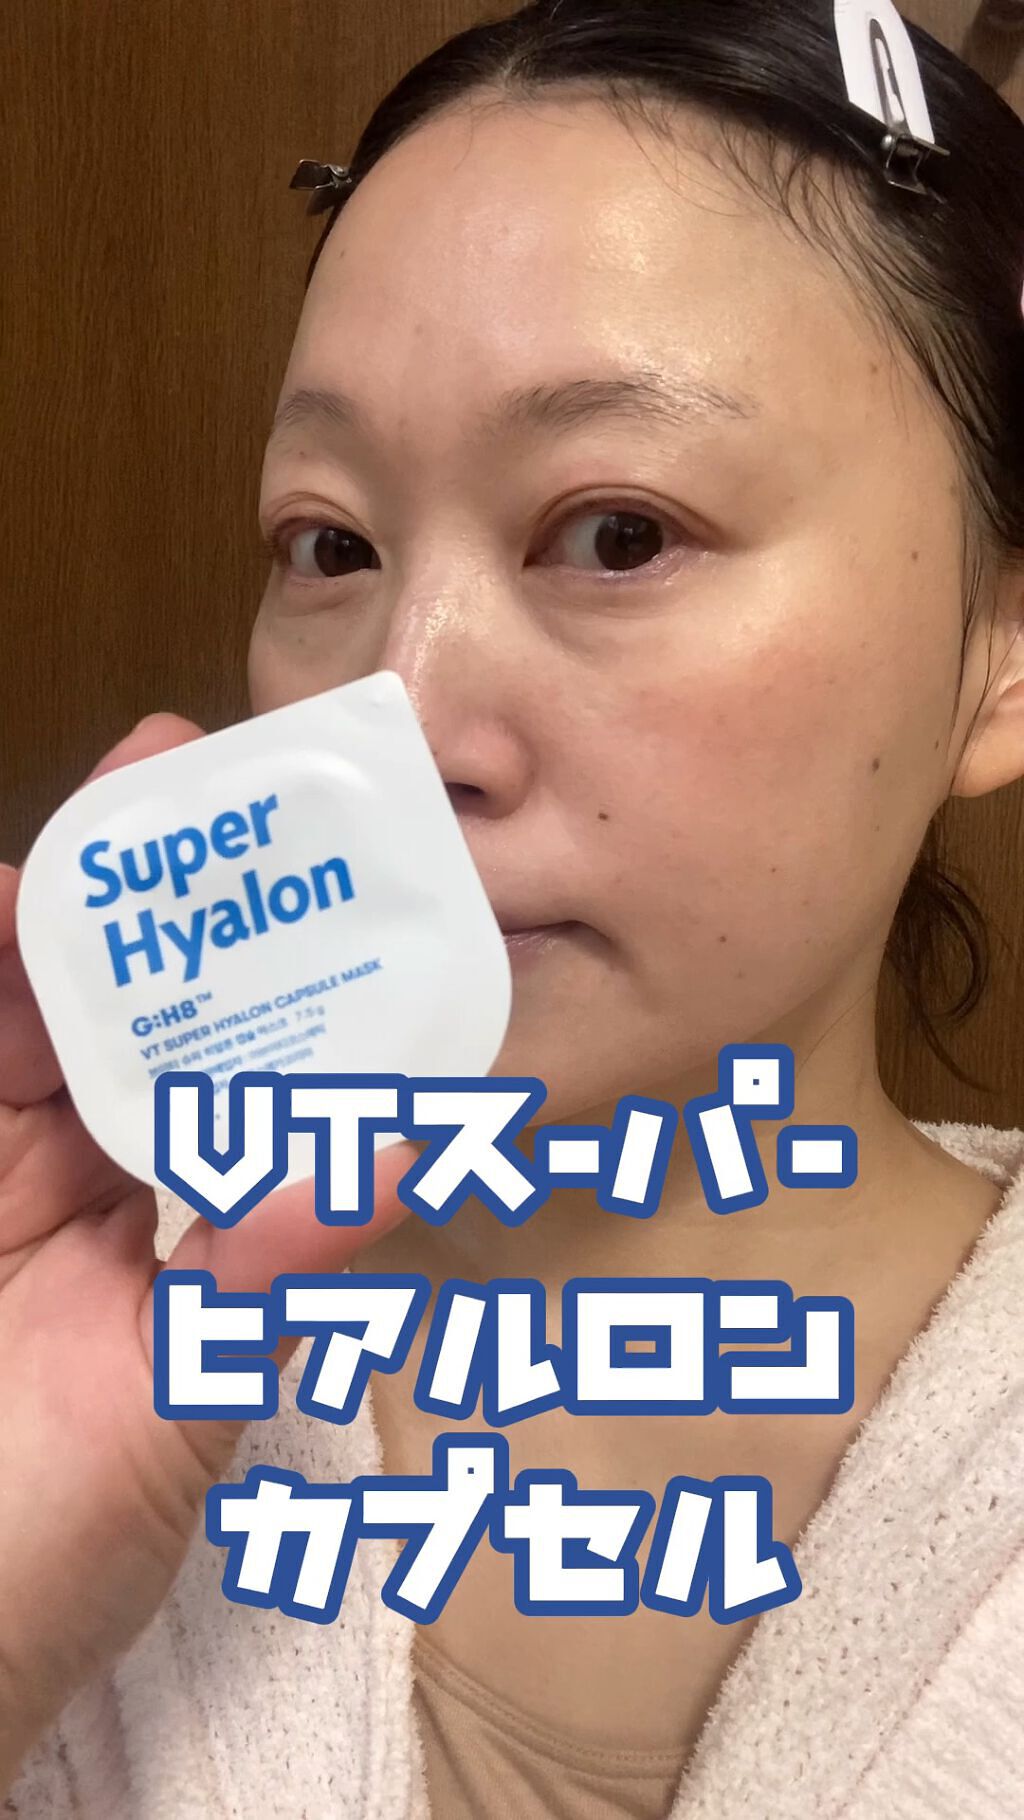 ☆新品 未使用☆ Super Hylon スーパーヒアルロンカプセルマスク